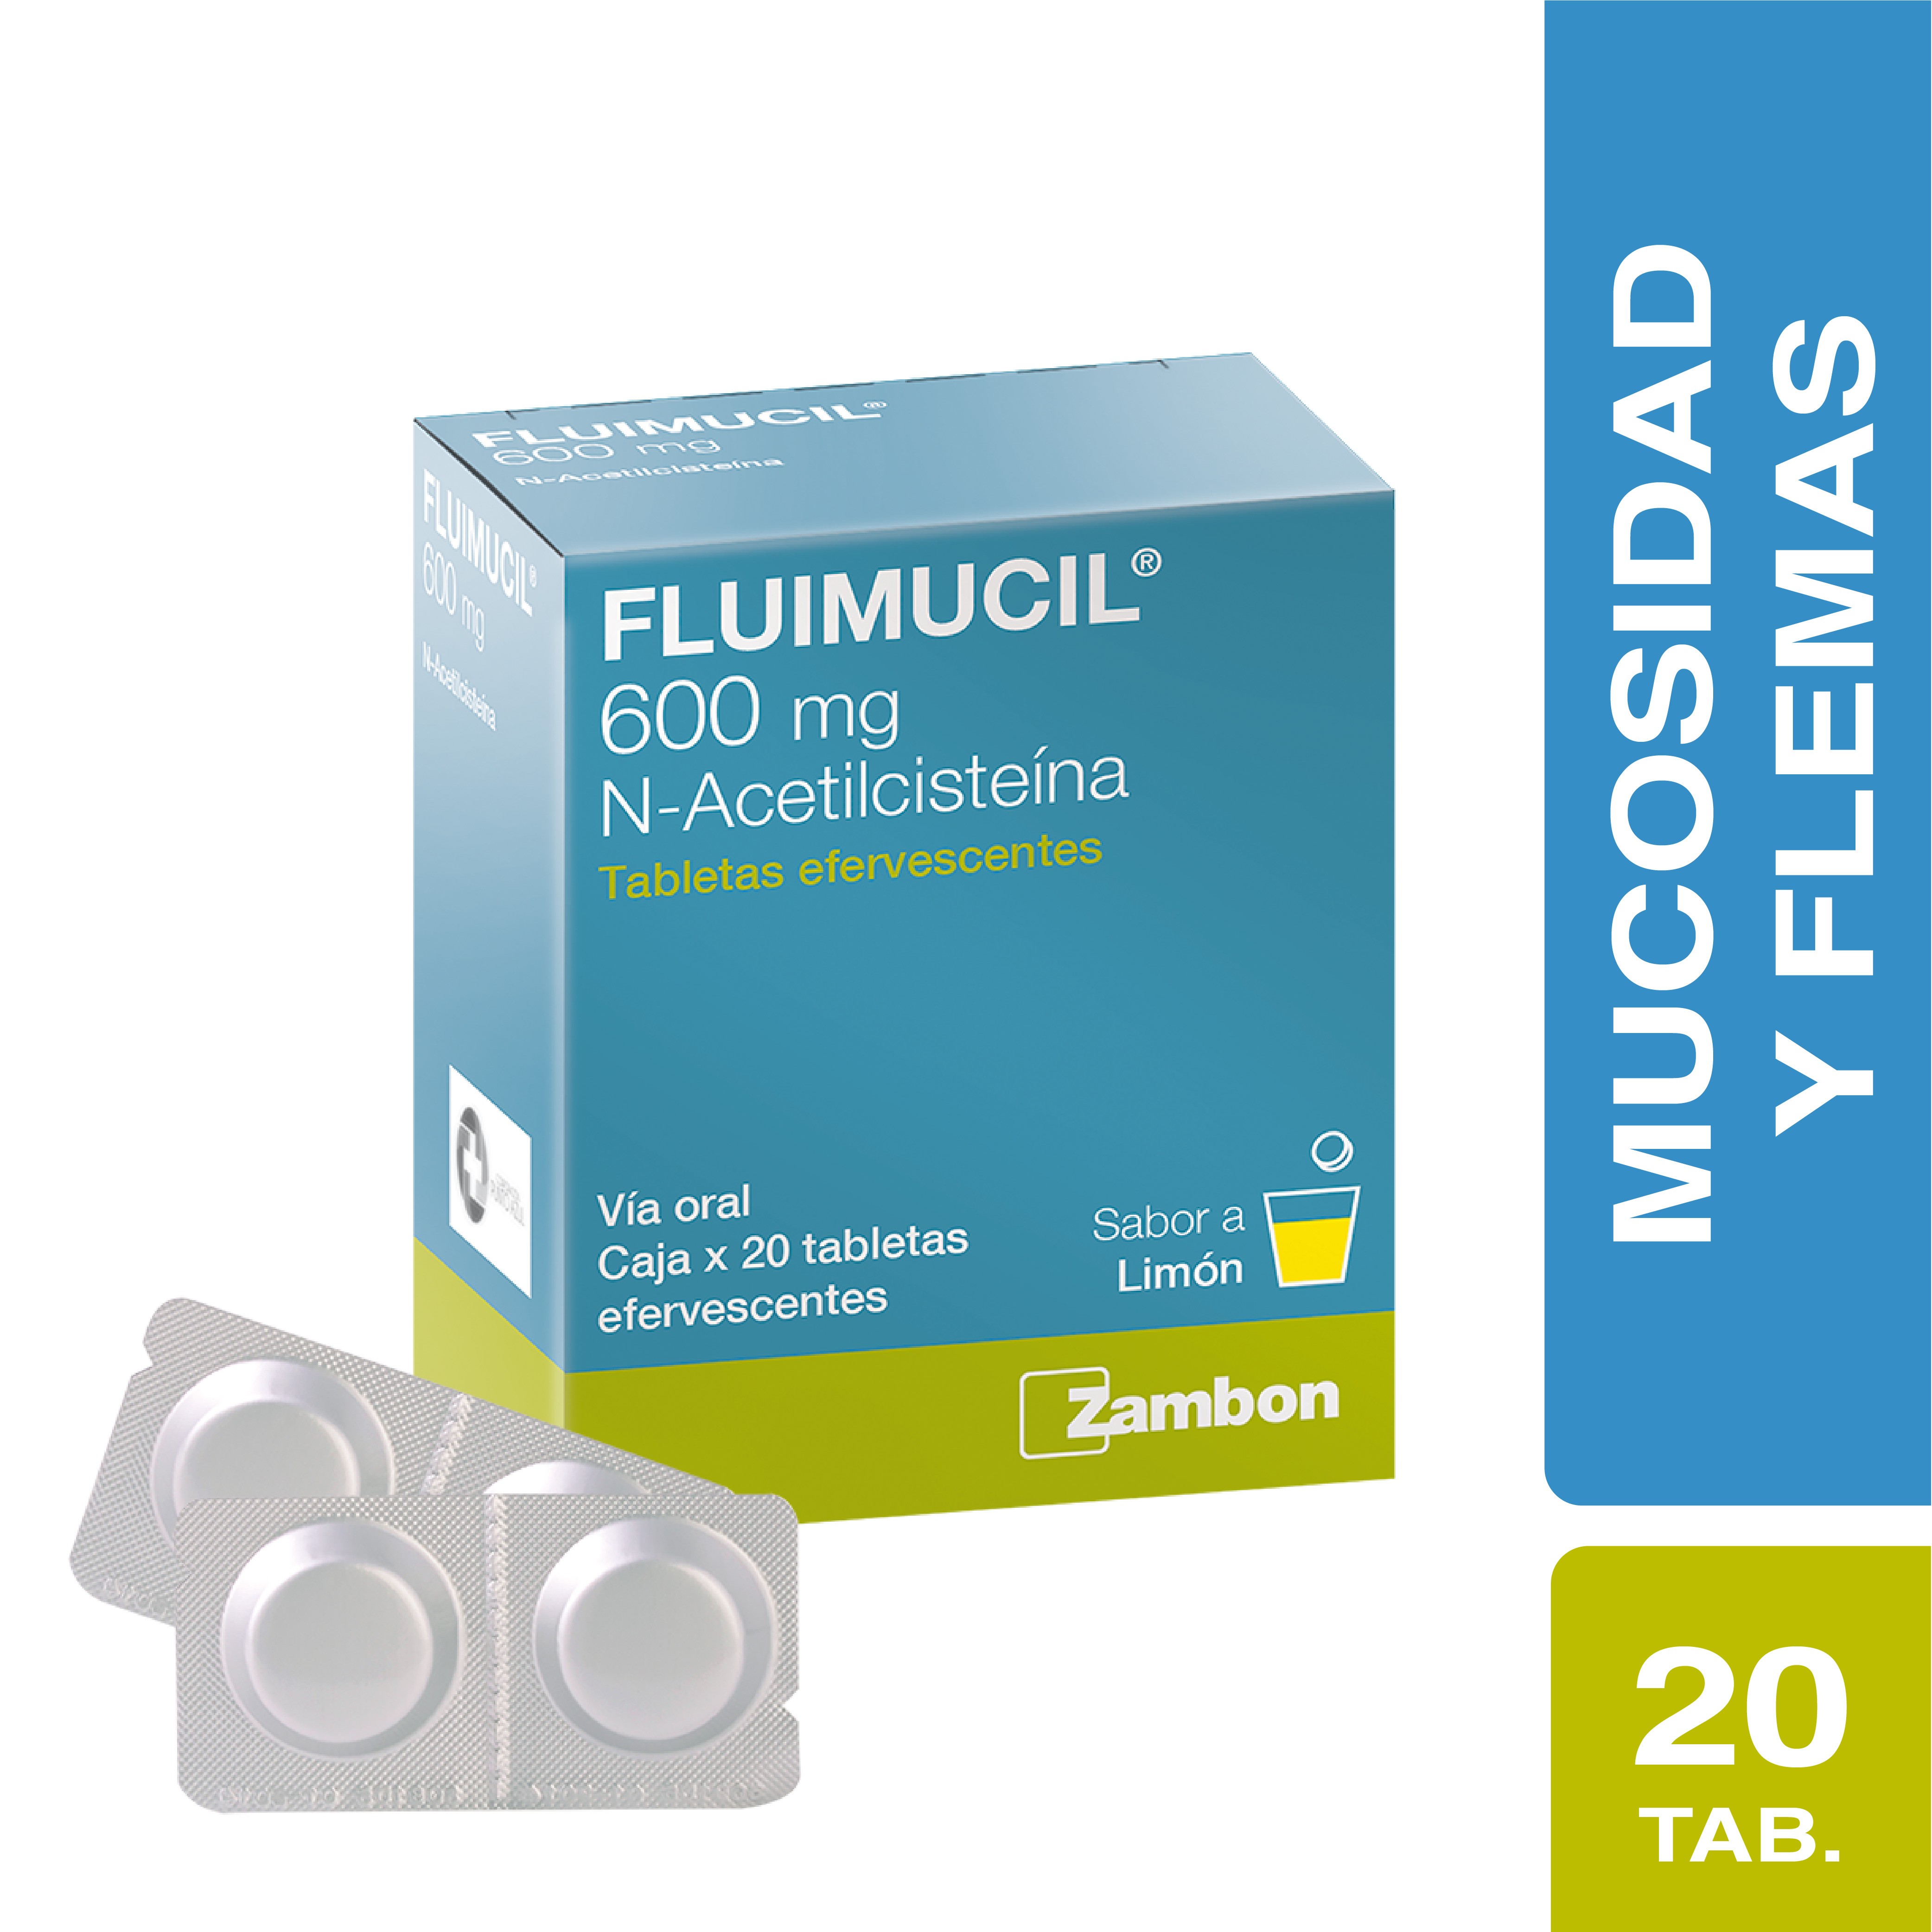 Comprar Fluimicil 600 mg 20 Comprimidos, En Farmalisto Colombia.